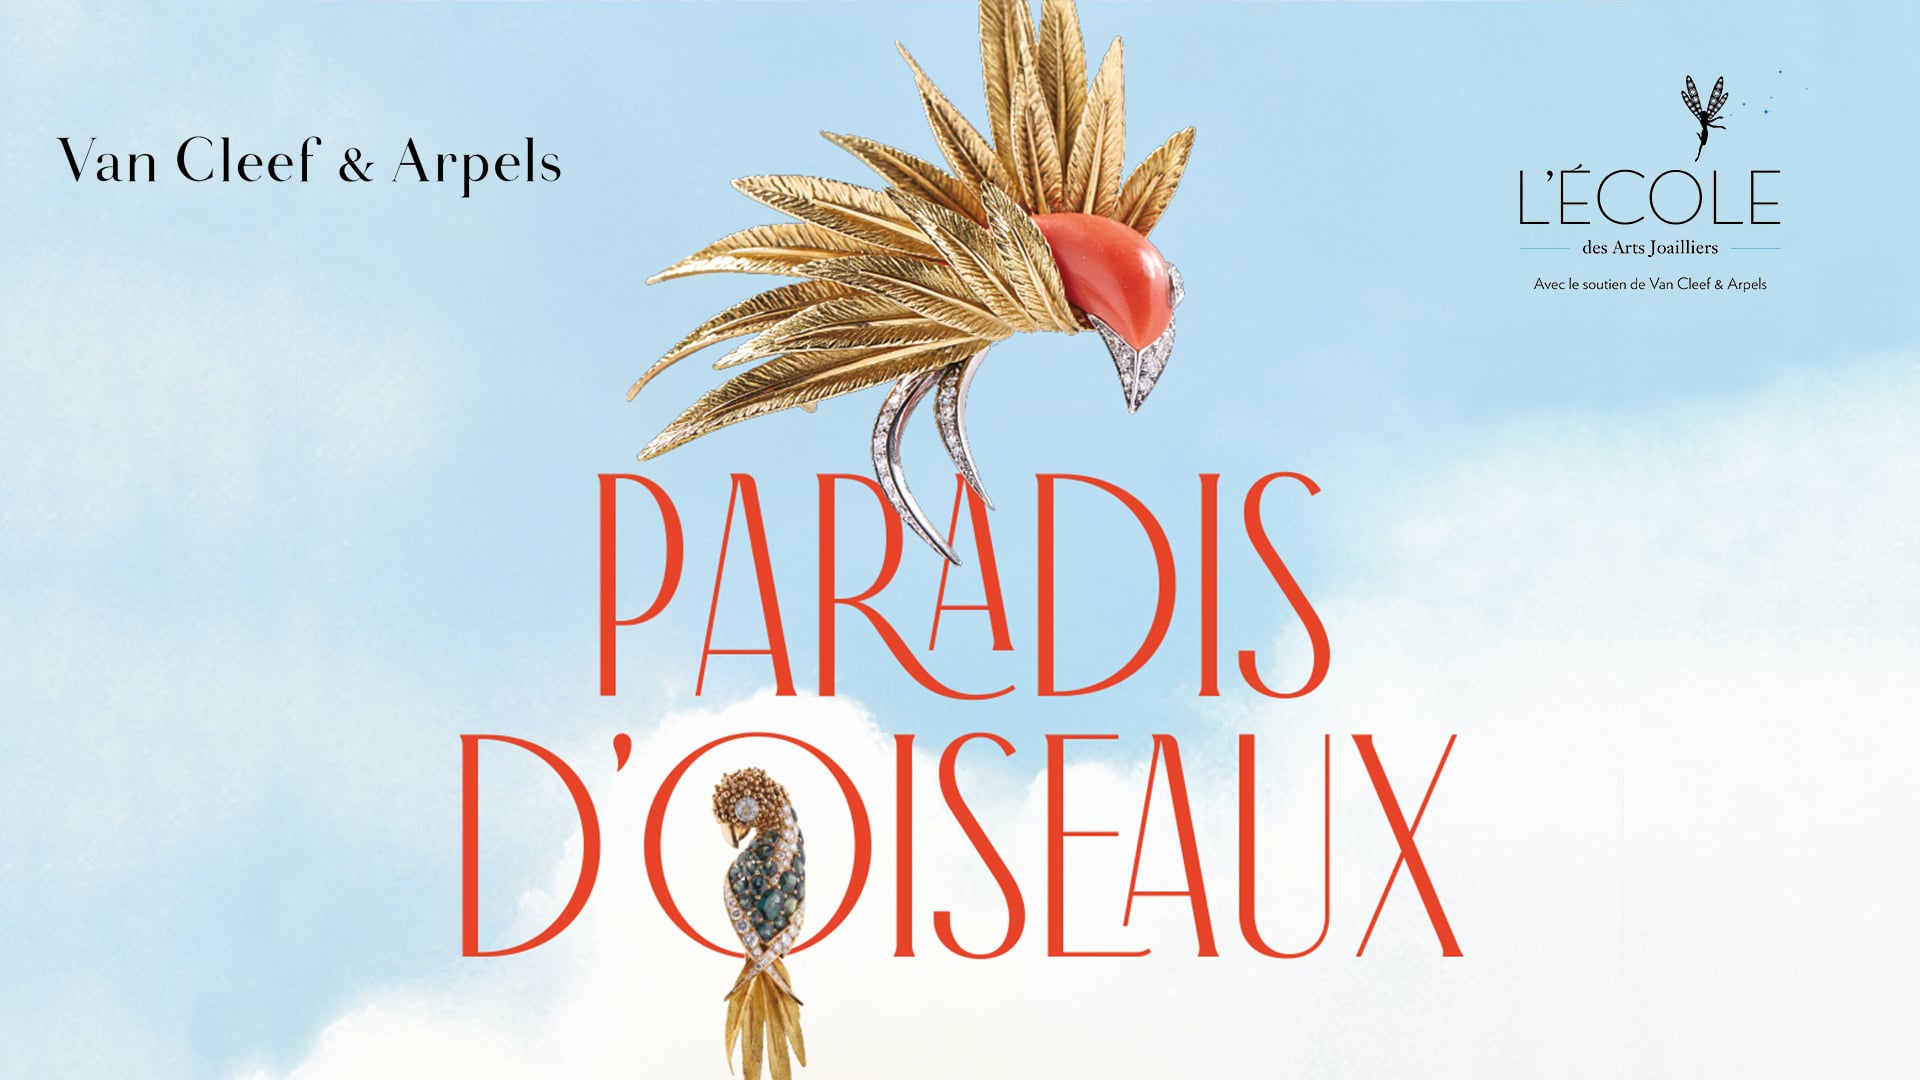 Van Cleef & Arpels - Paradis d'oiseaux-2